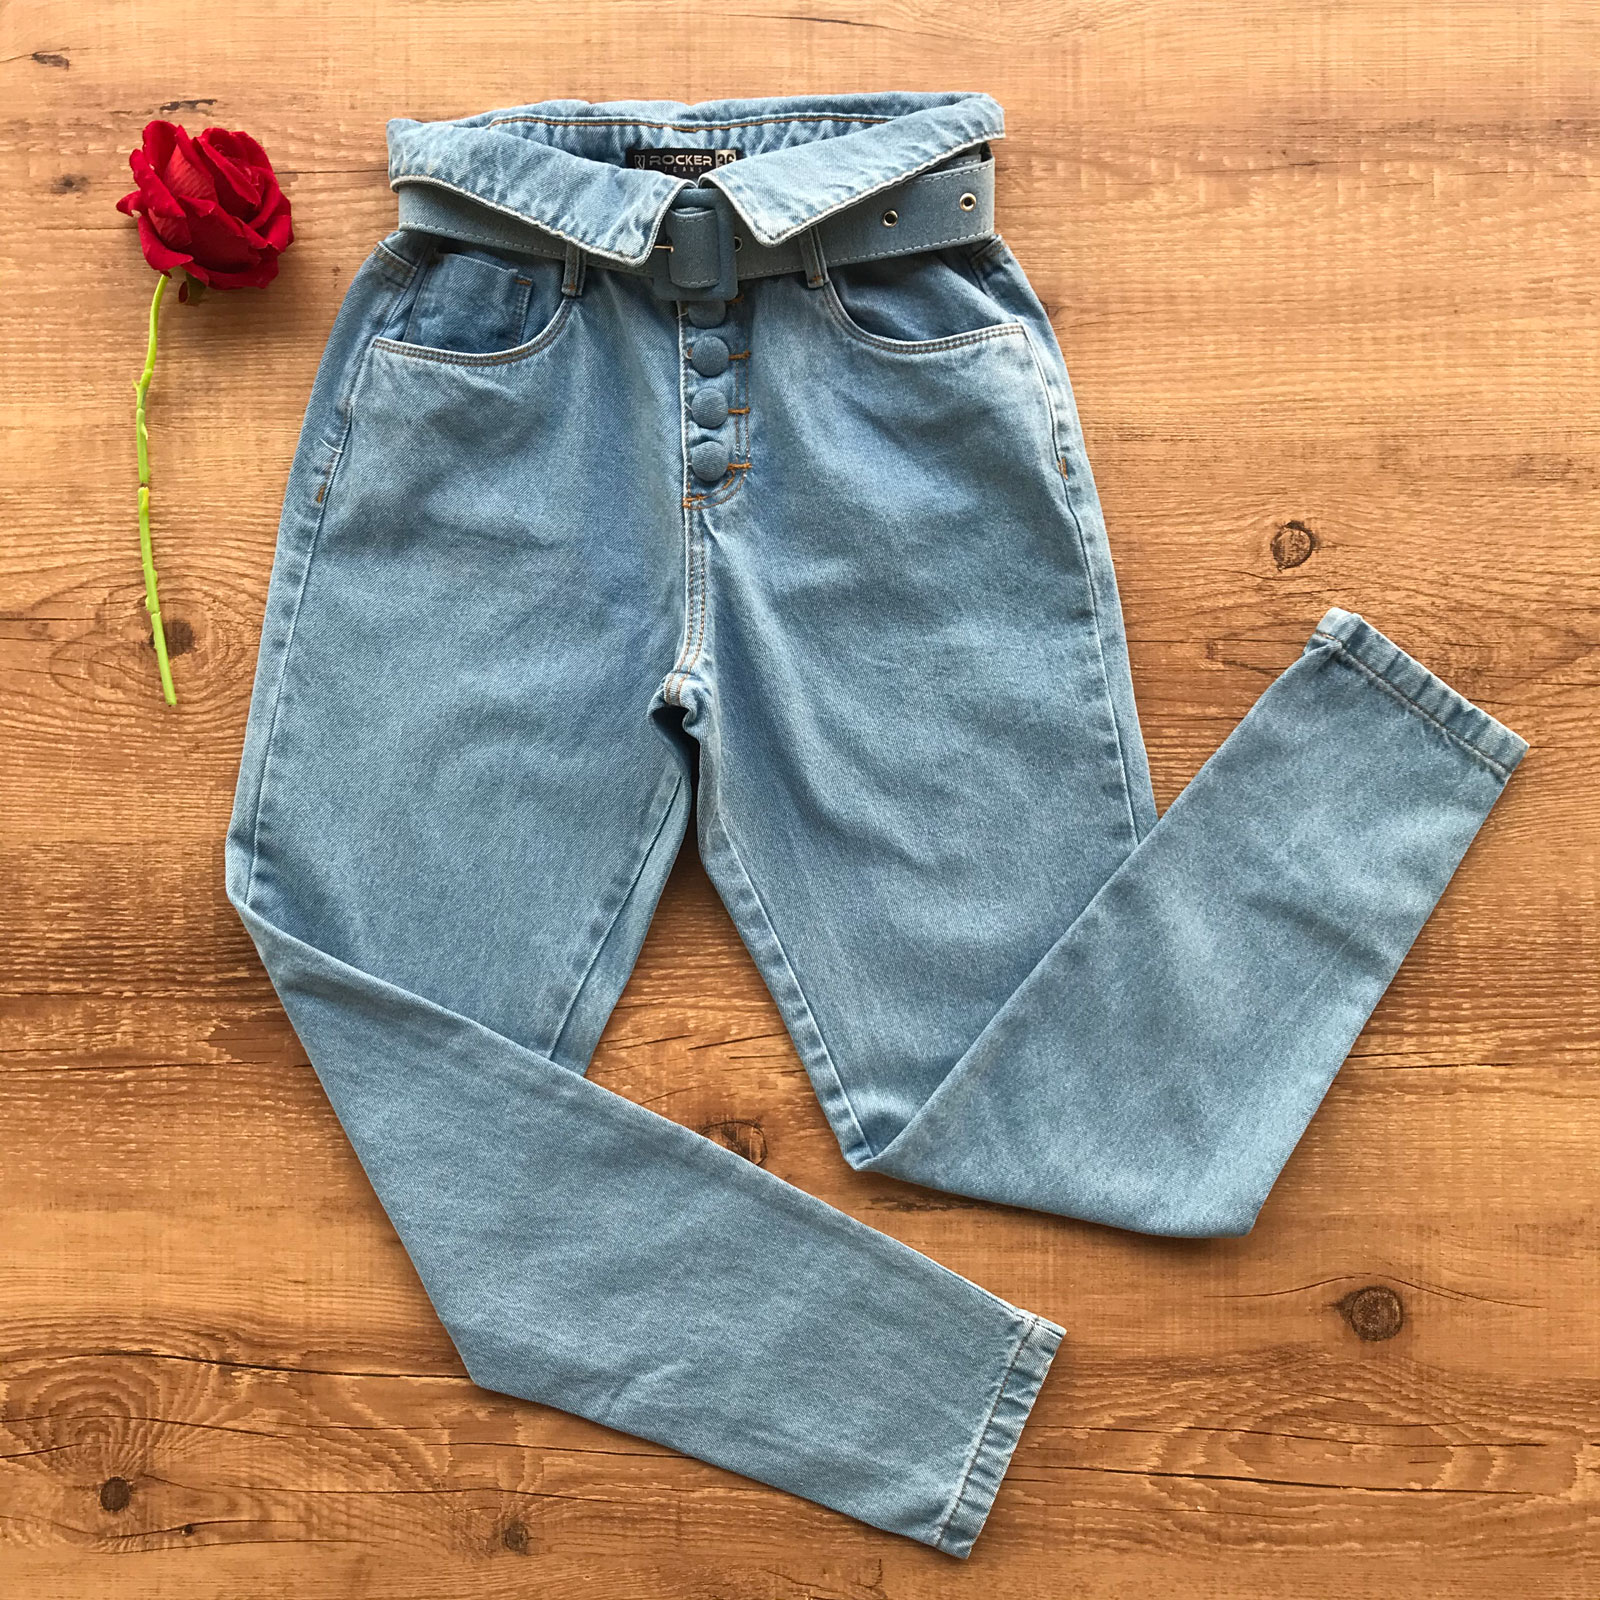 Calça jeans hot pants cintura alta cos alto 4 botões oferta - R